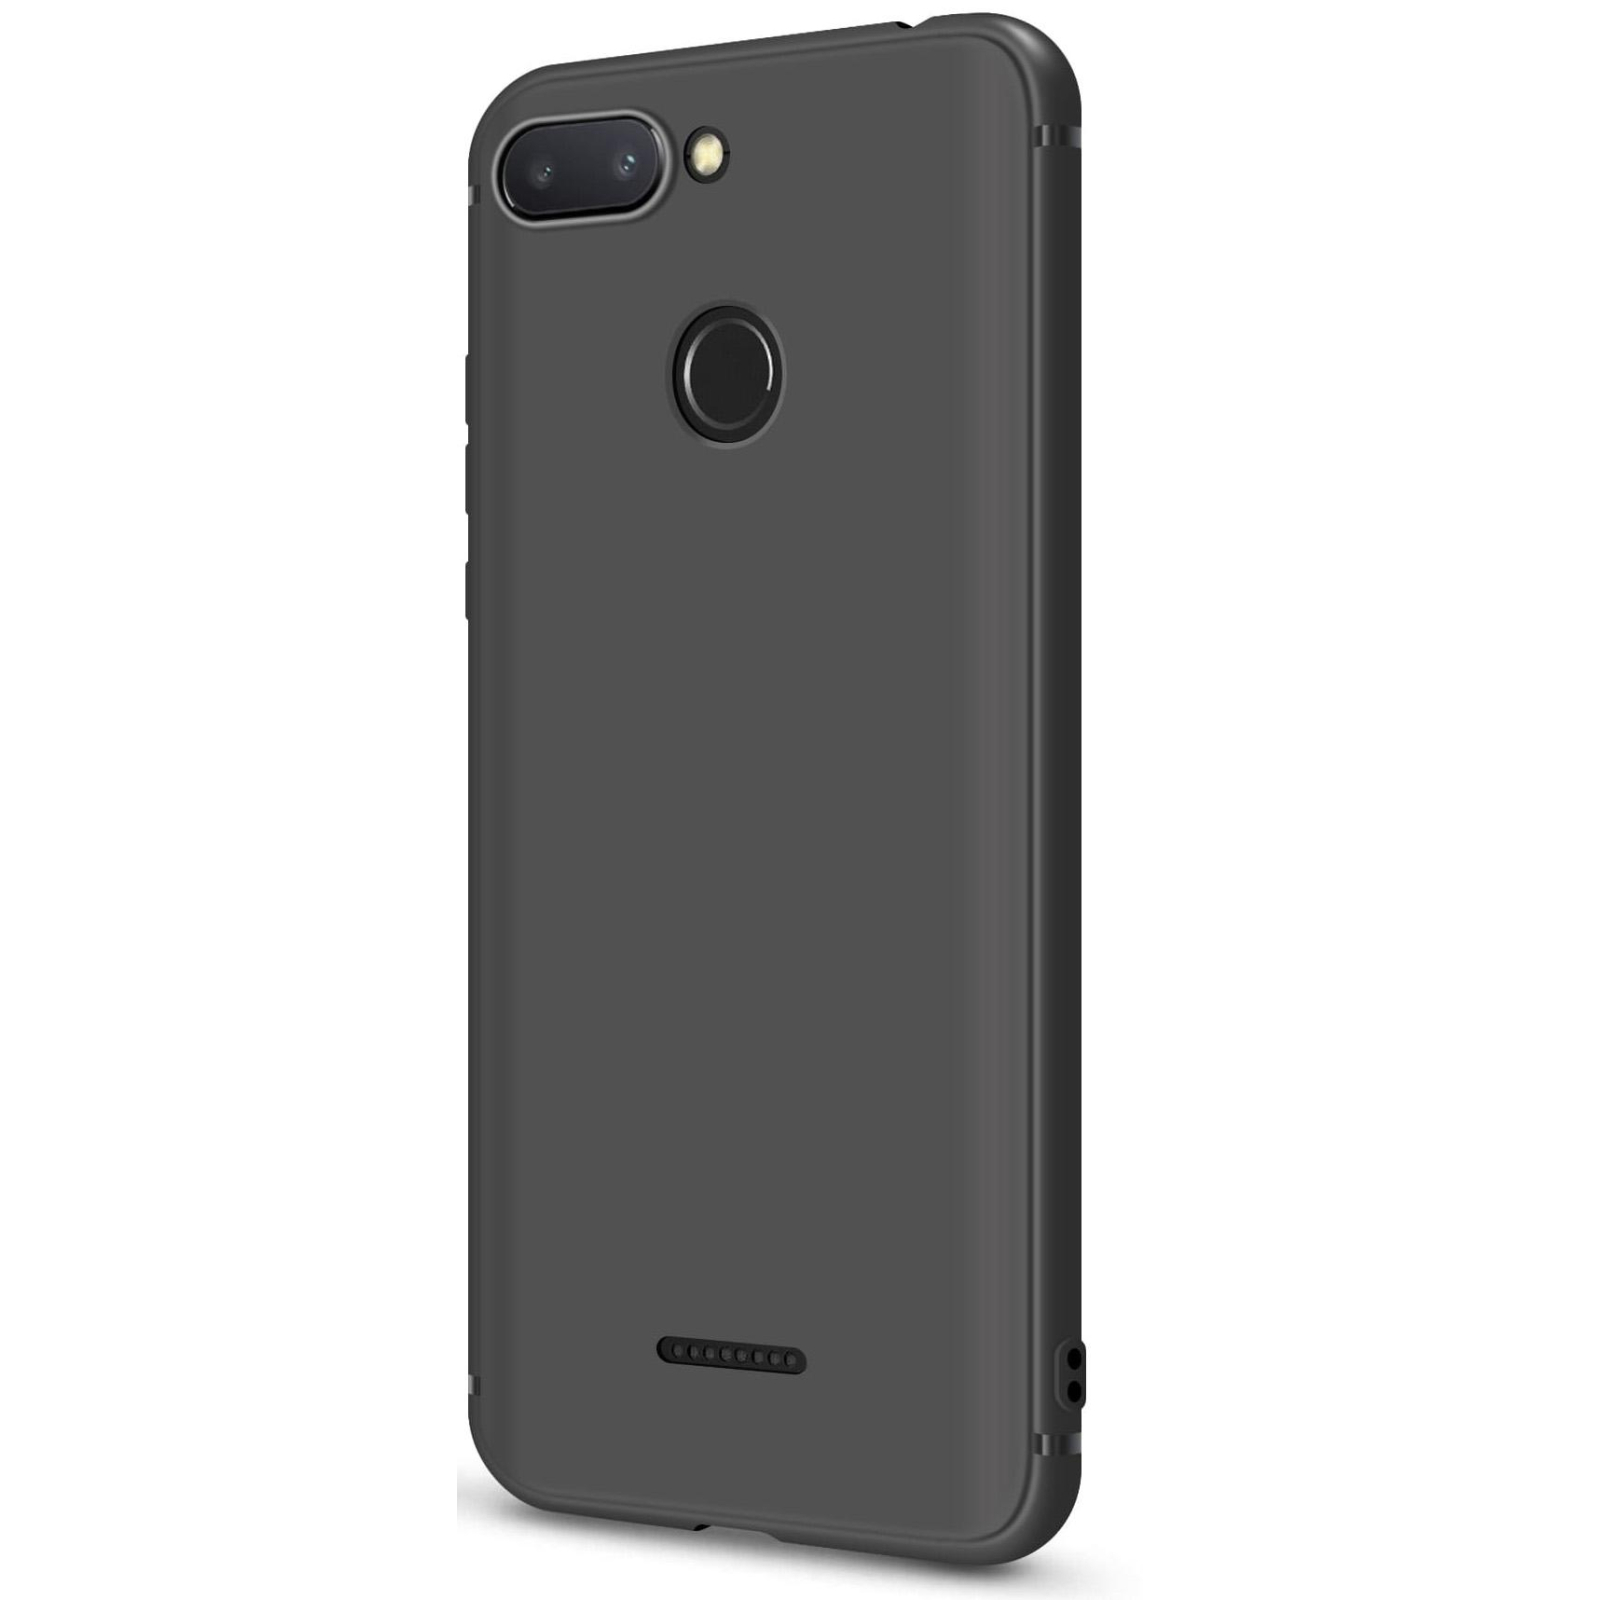 Чехол для мобильного телефона MakeFuture Skin Case Xiaomi Redmi 6 Black (MCSK-XR6BK) изображение 3